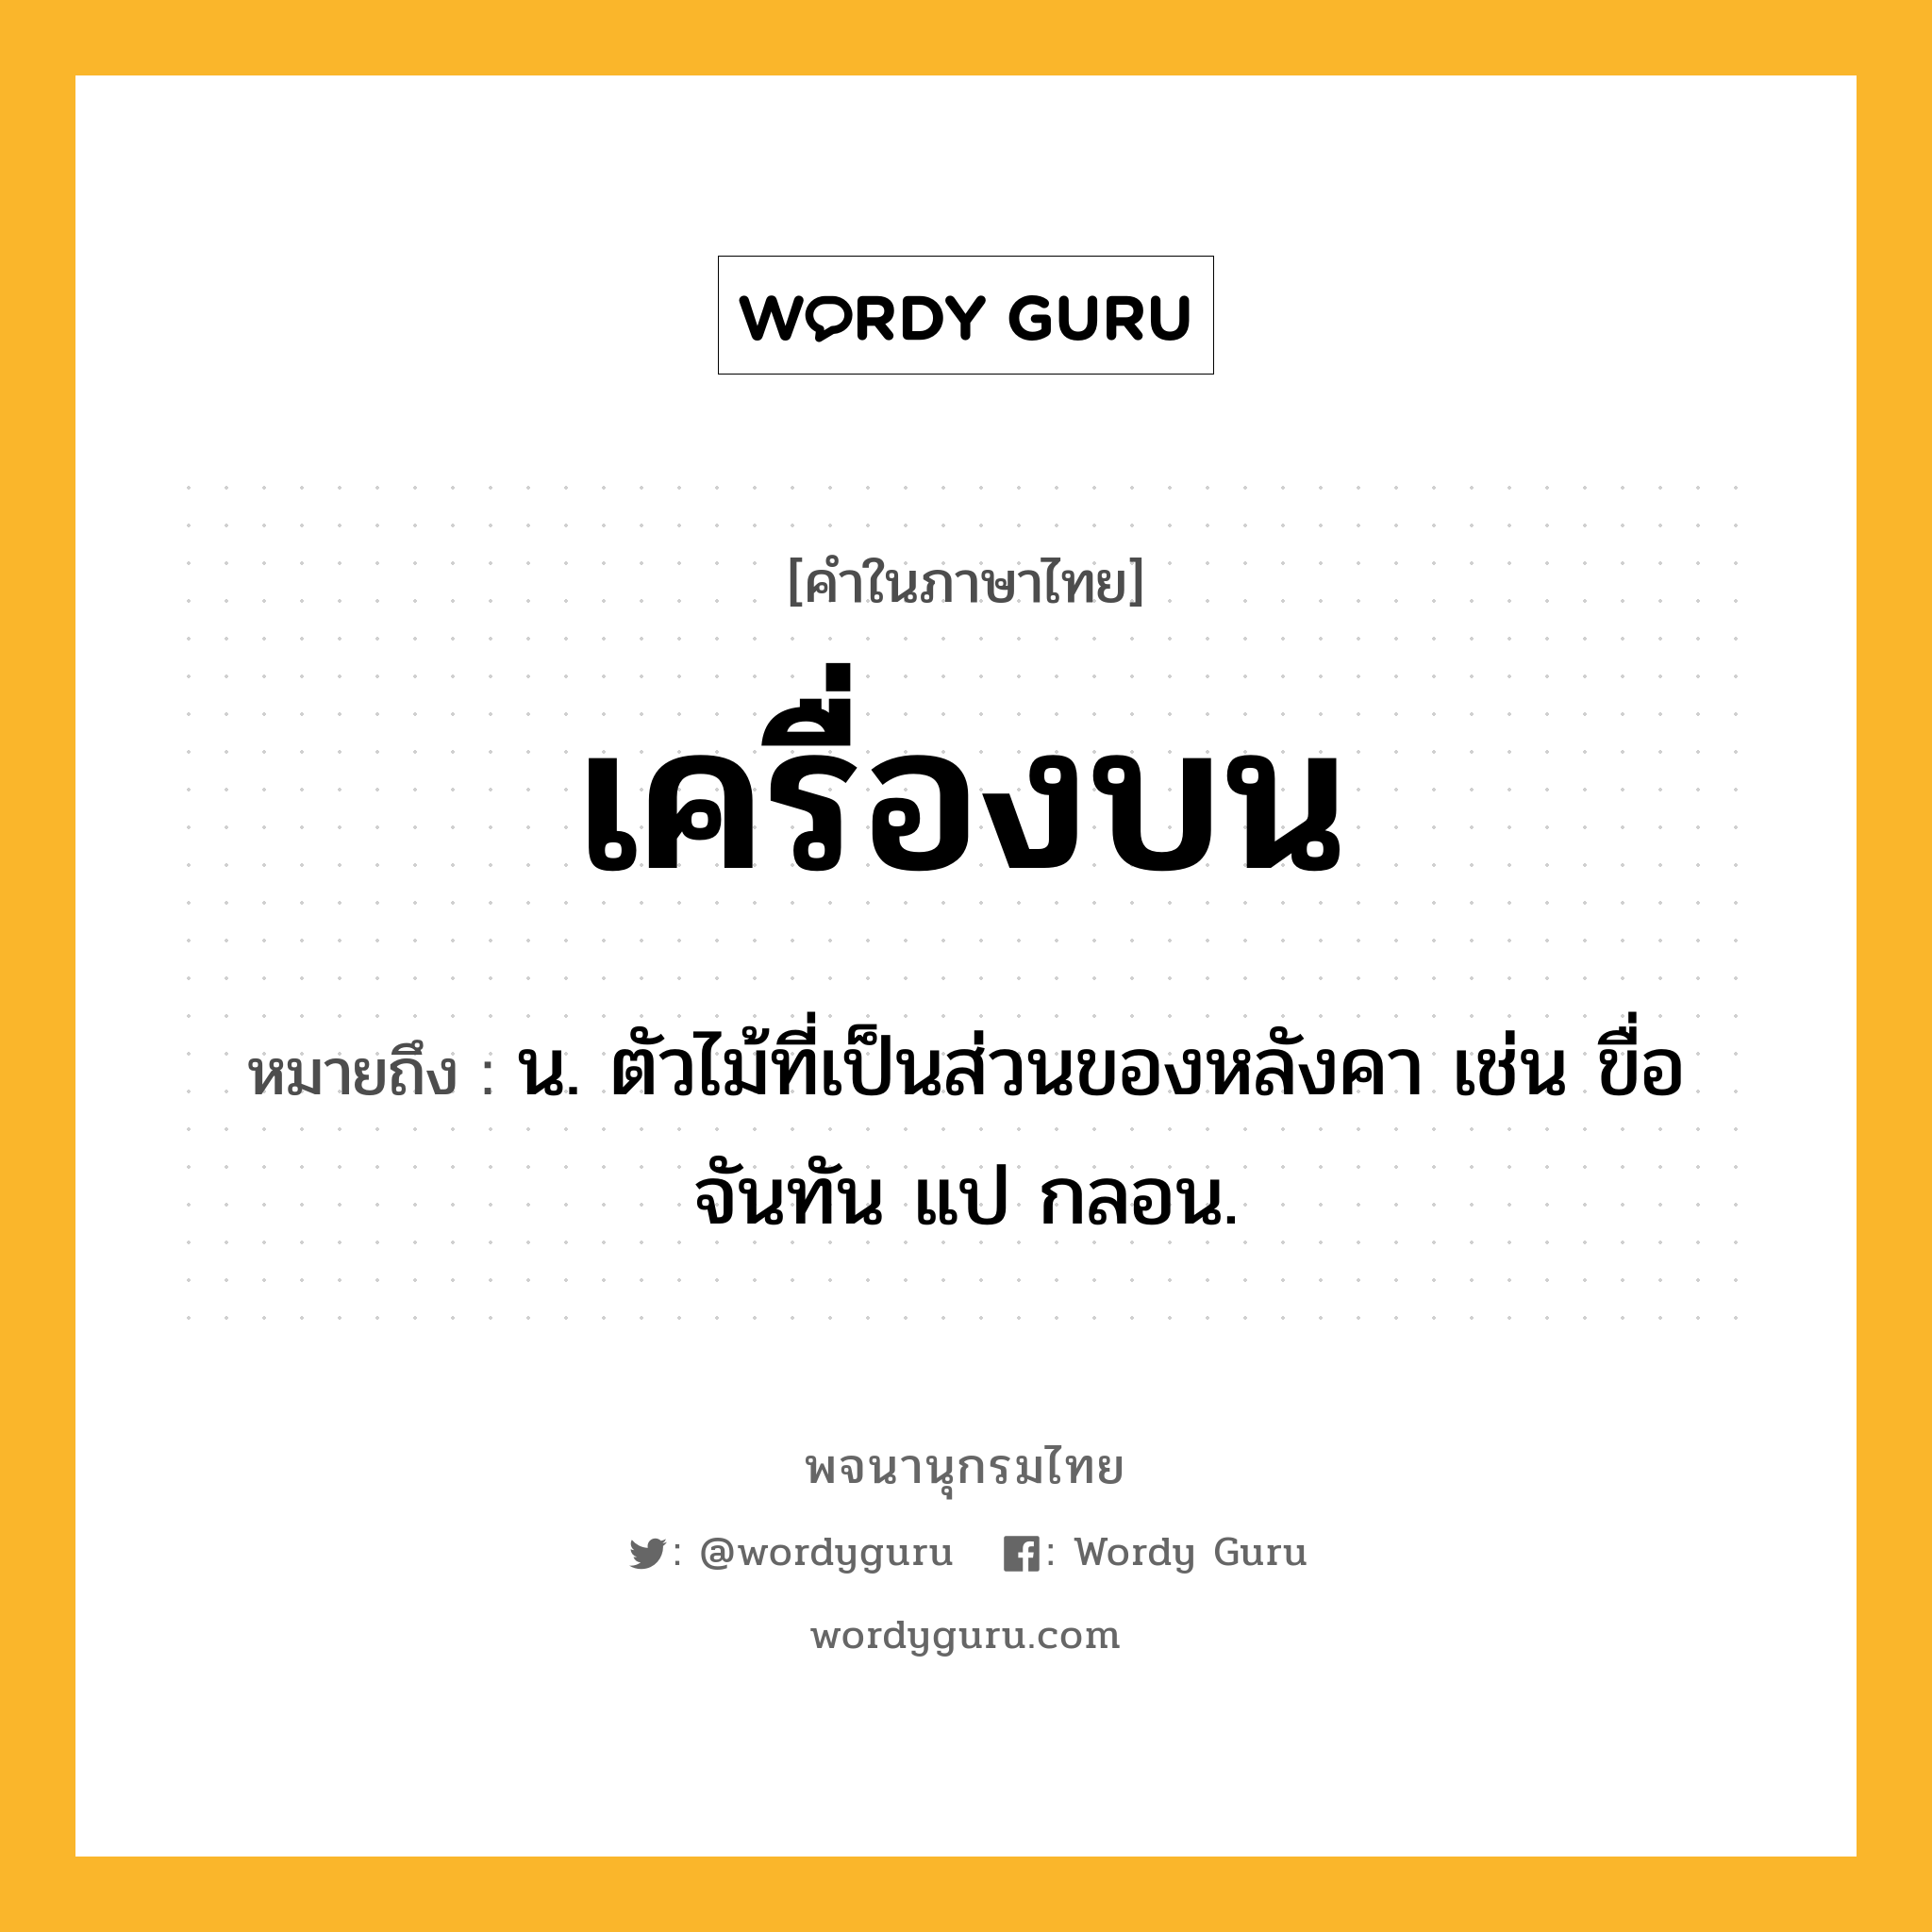 เครื่องบน ความหมาย หมายถึงอะไร?, คำในภาษาไทย เครื่องบน หมายถึง น. ตัวไม้ที่เป็นส่วนของหลังคา เช่น ขื่อ จันทัน แป กลอน.